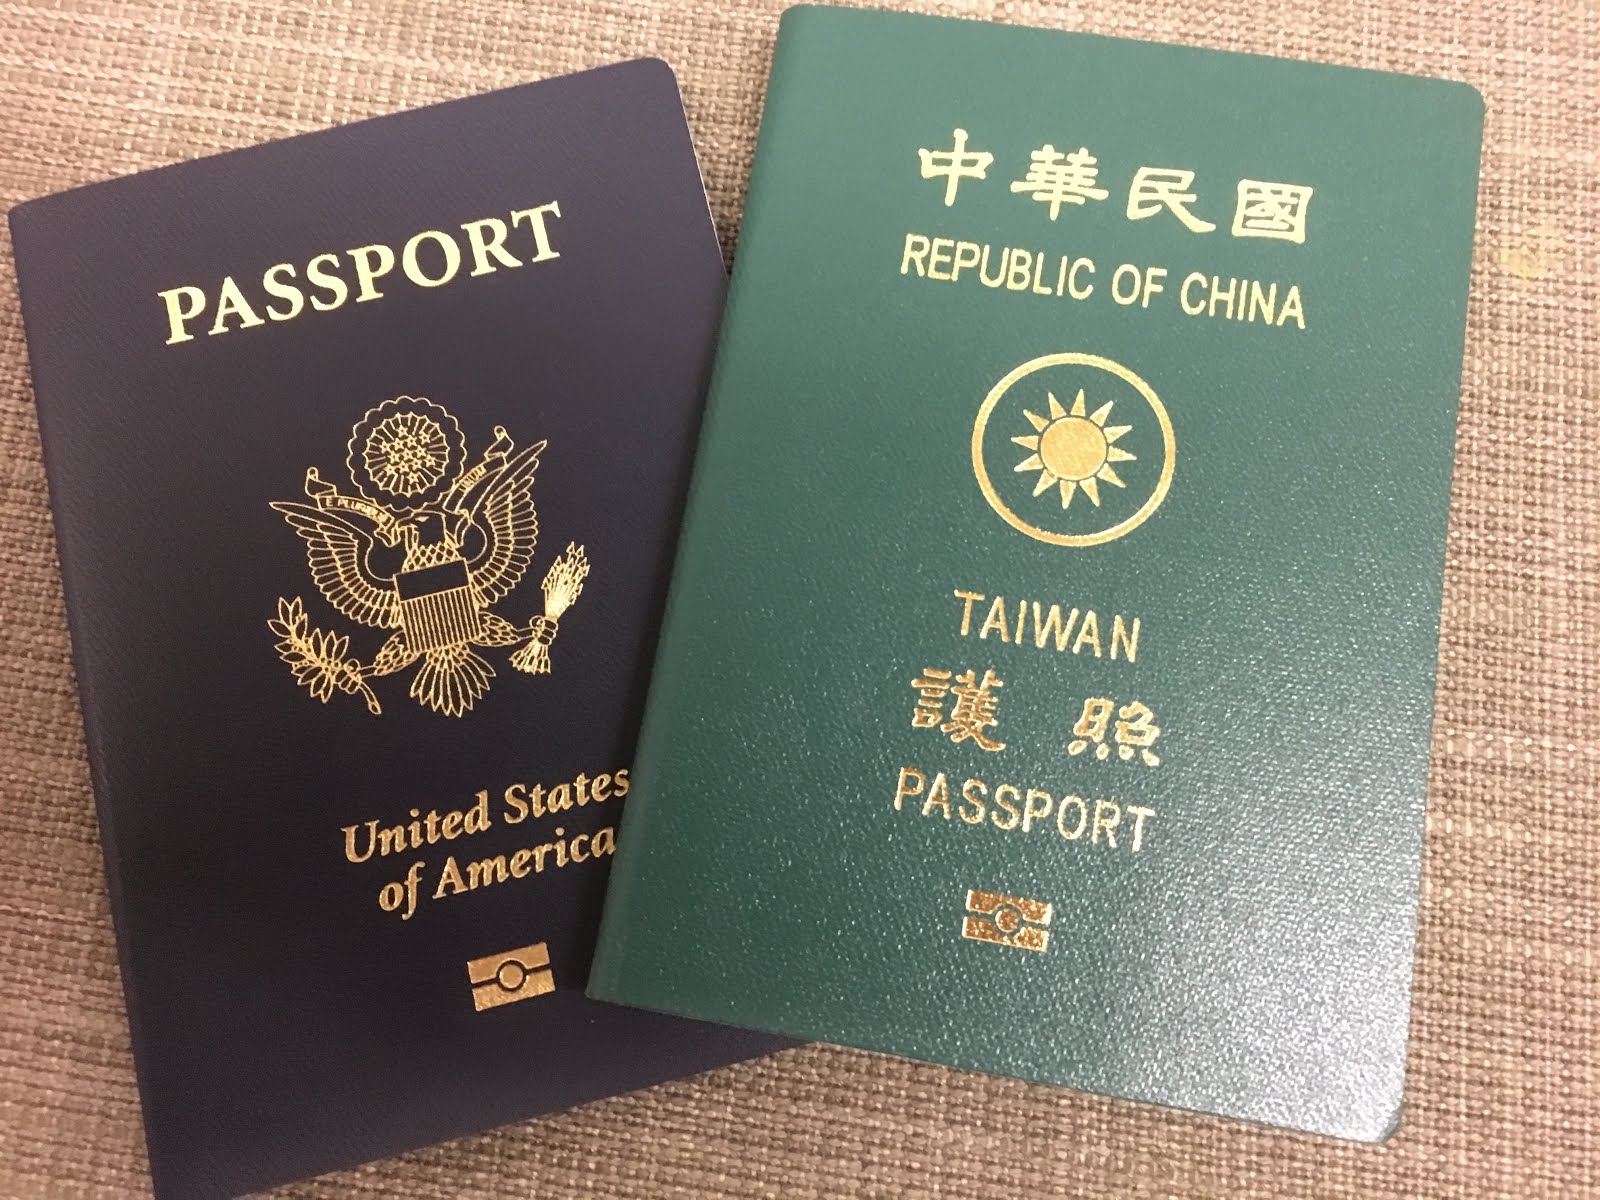 在台灣的越南經濟文化辦事處取得簽證的資訊與流程 | 在台灣申請越南簽證的方法